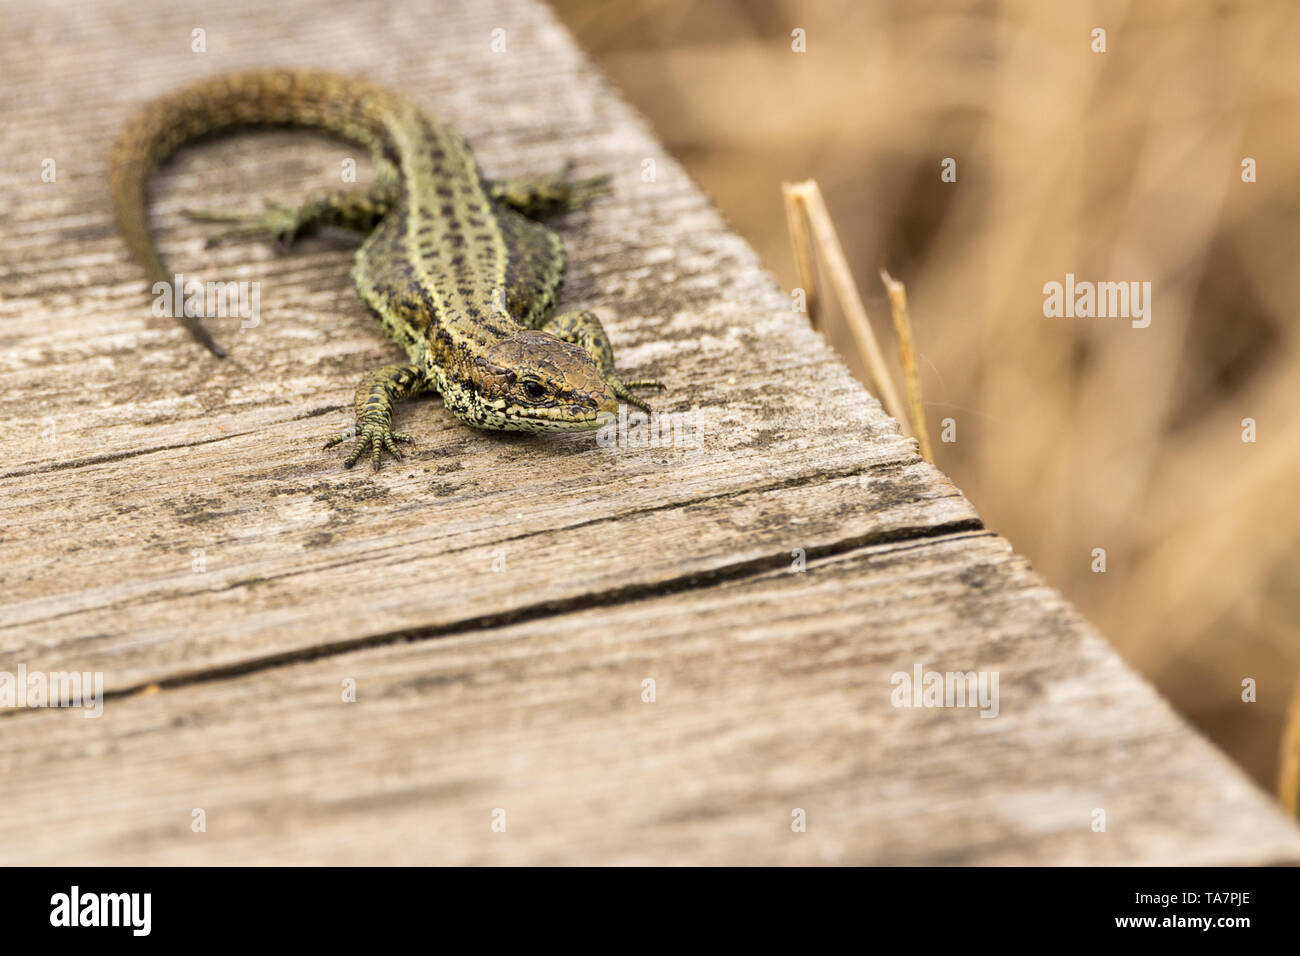 Lizard gemeinsame (Lacerta vivipara) Erwärmung auf einem Board Walk erhitzt durch die Sonne. Grau Braun grünlich mit dunklen Mustern an seinen Körper und langen Schwanz Stockfoto